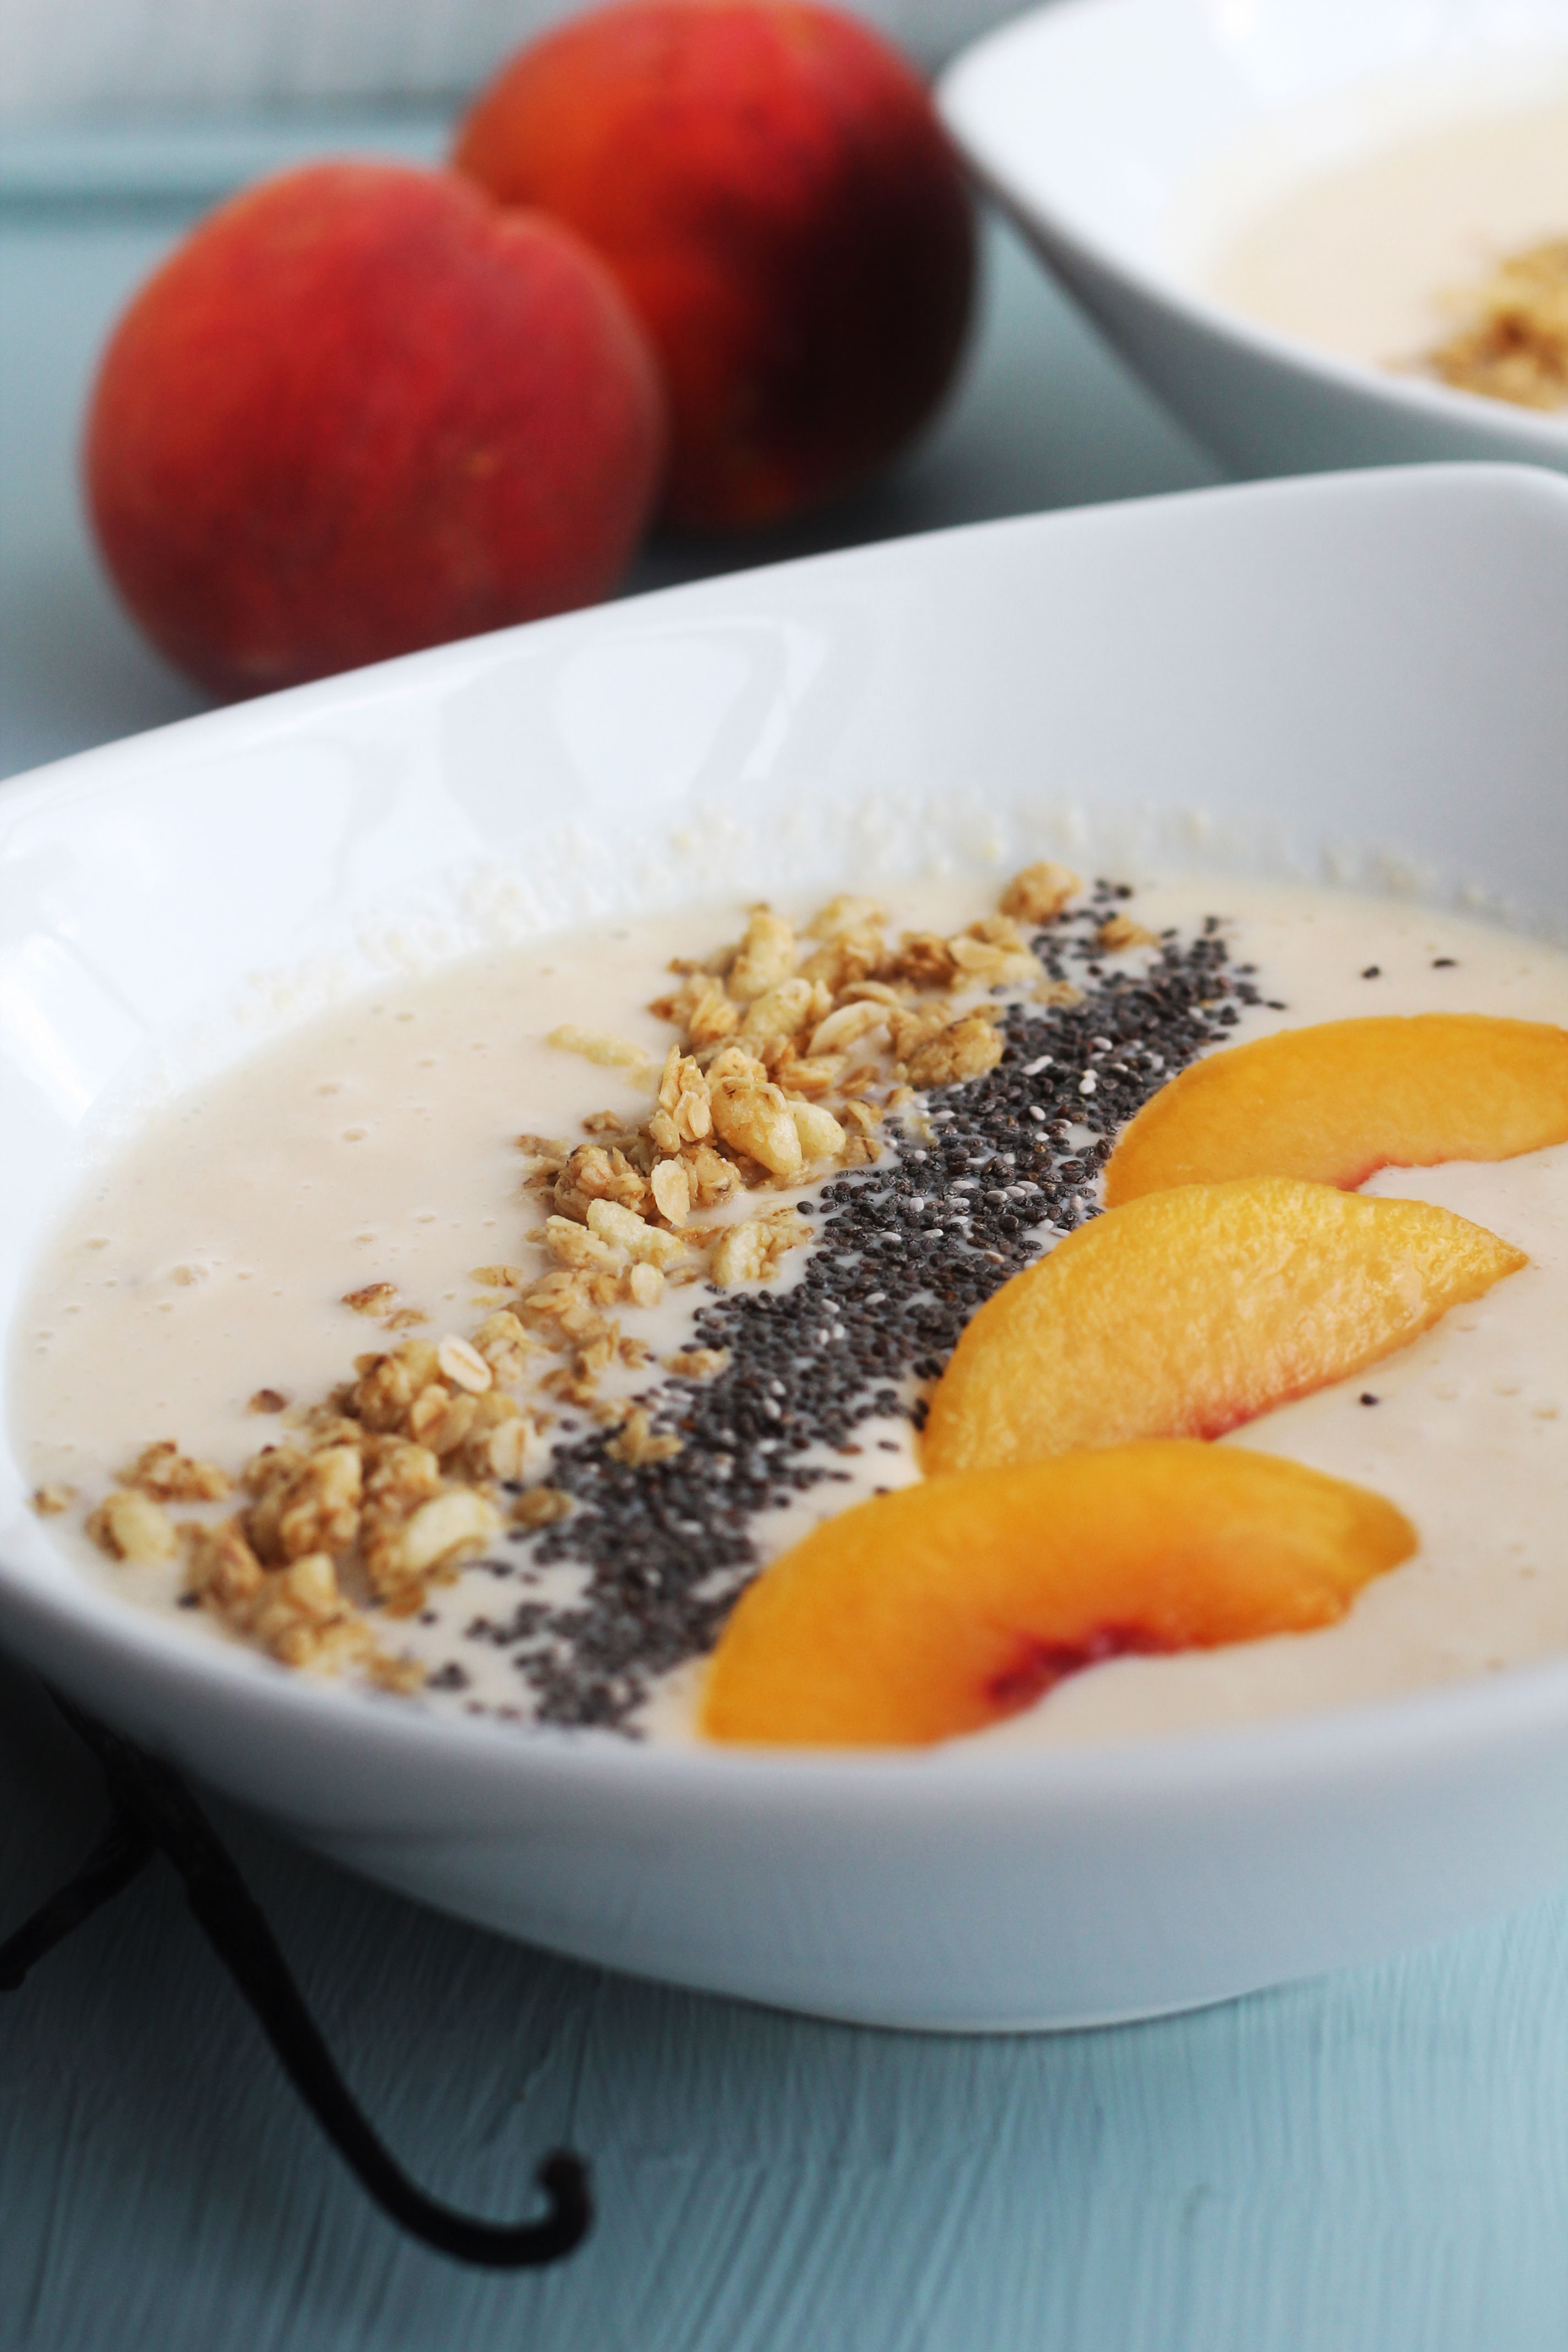 Peaches, Banana, Vanilla Greek Yogurt make this Peach Vanilla Smoothie Bowl the perfect way to start your day!